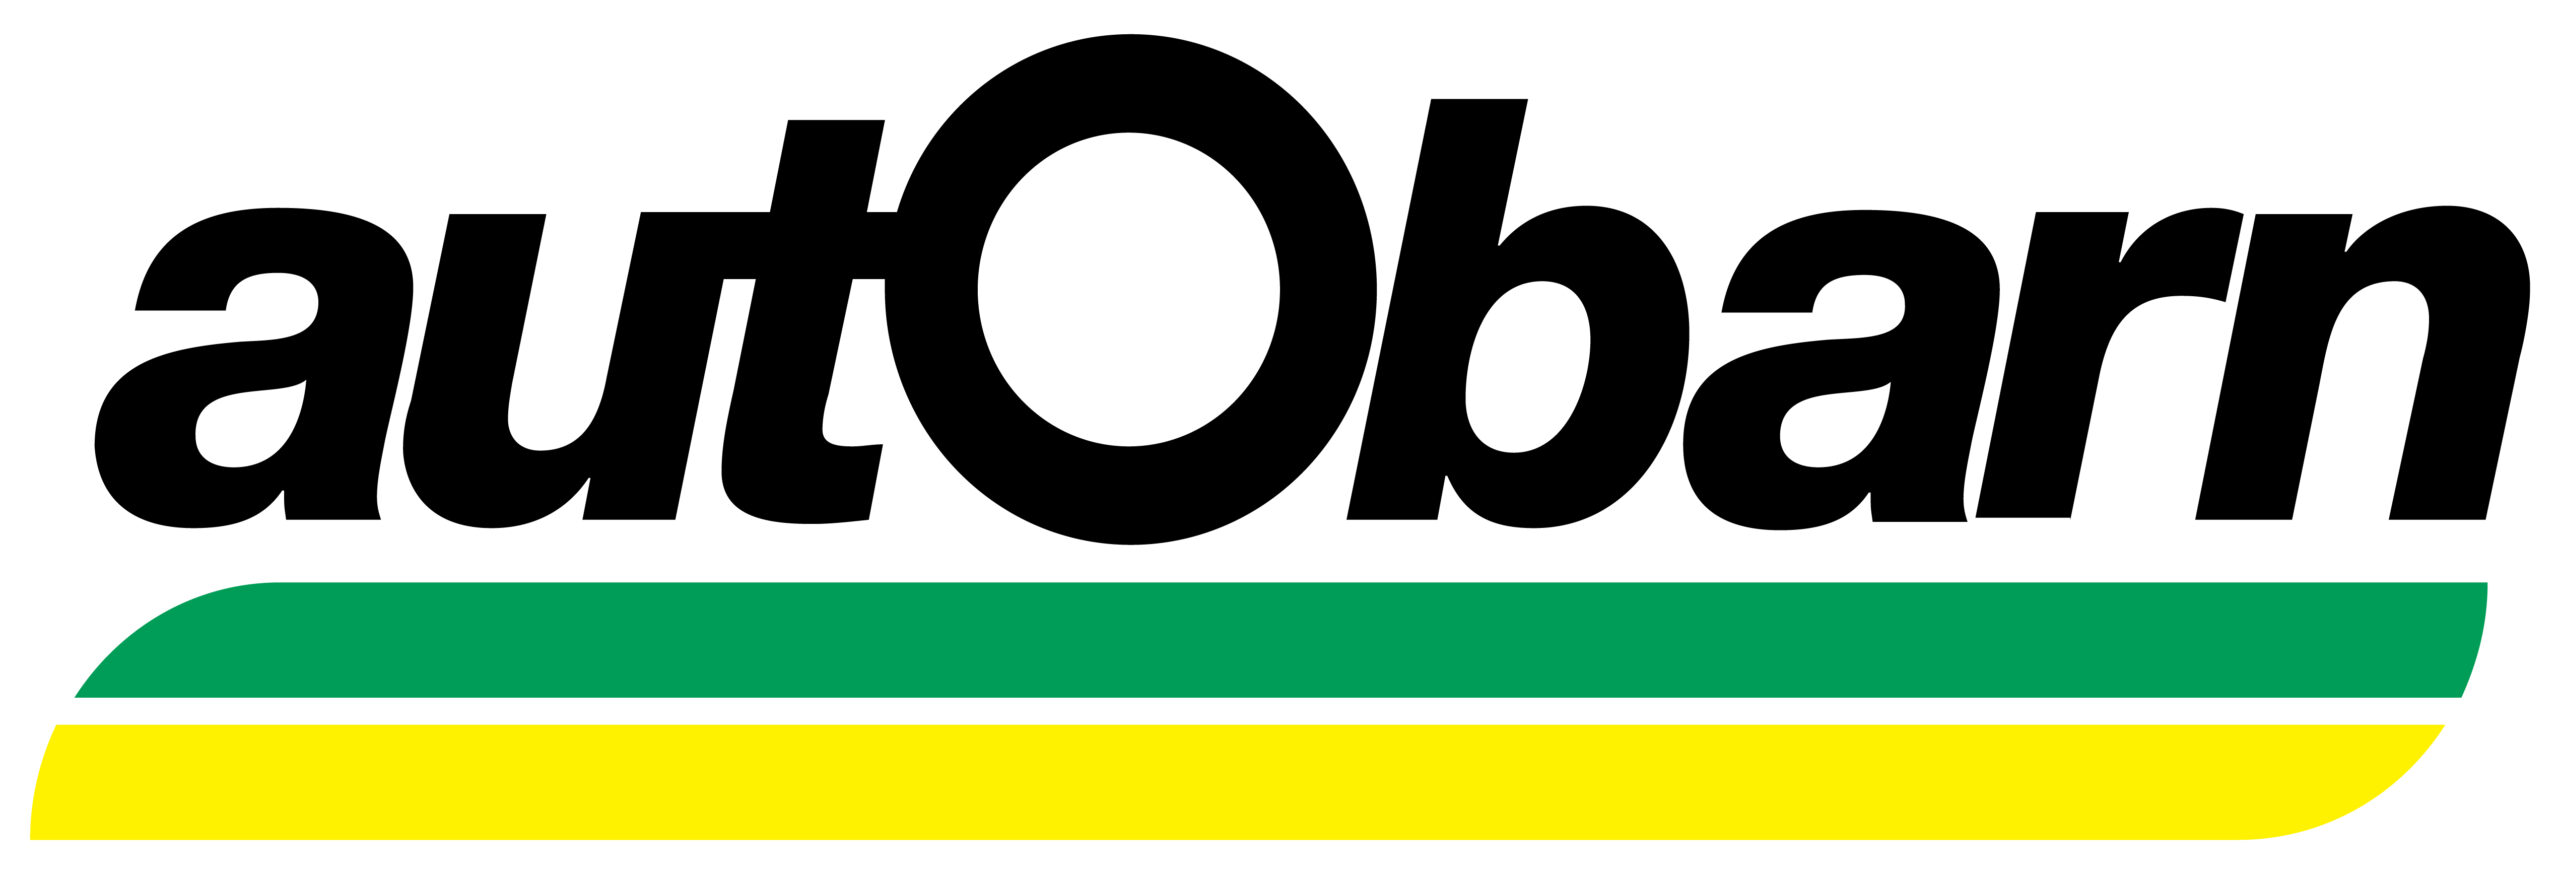 Autobarn Bundaberg logo